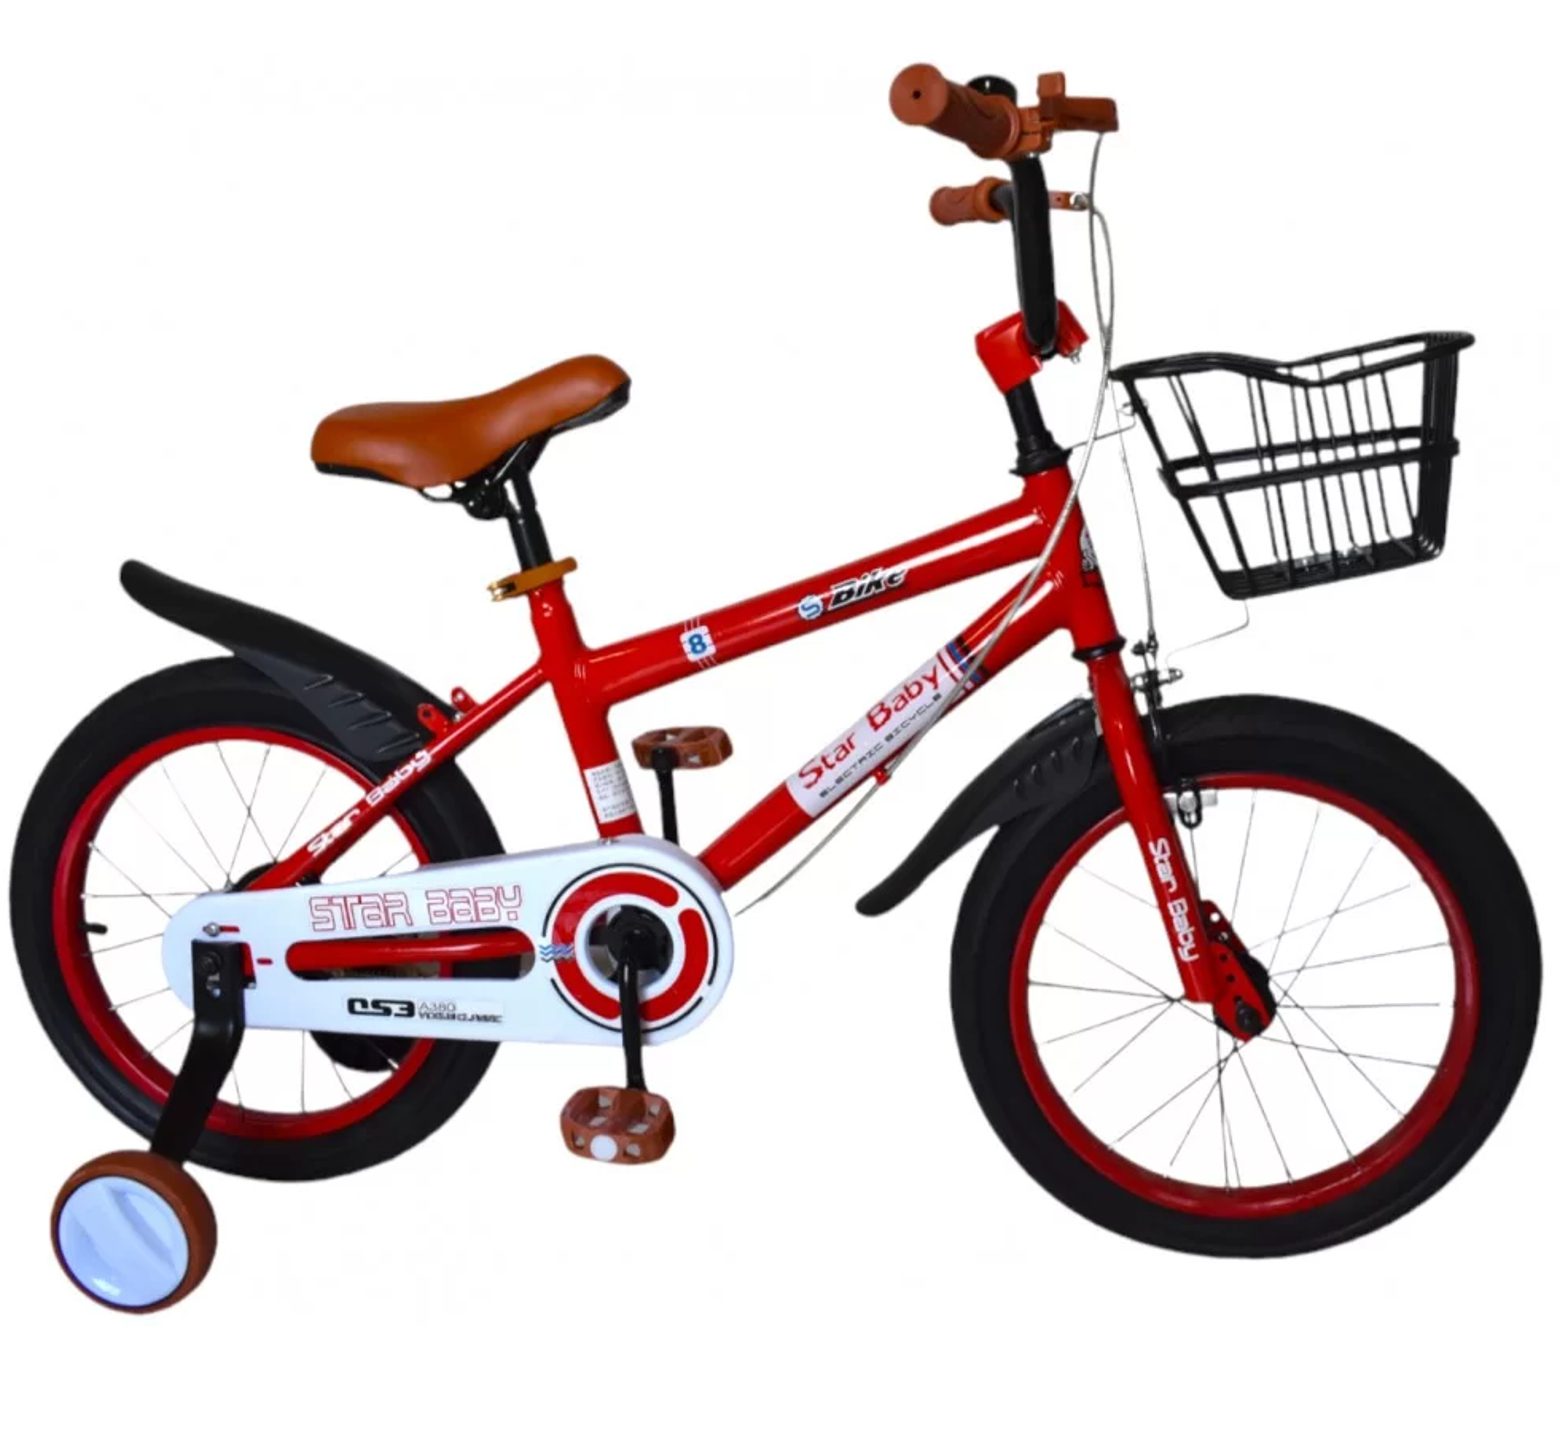 Ποδήλατο starbaby 16 ιντσών με καλάθι σε κόκκινο χρώμα